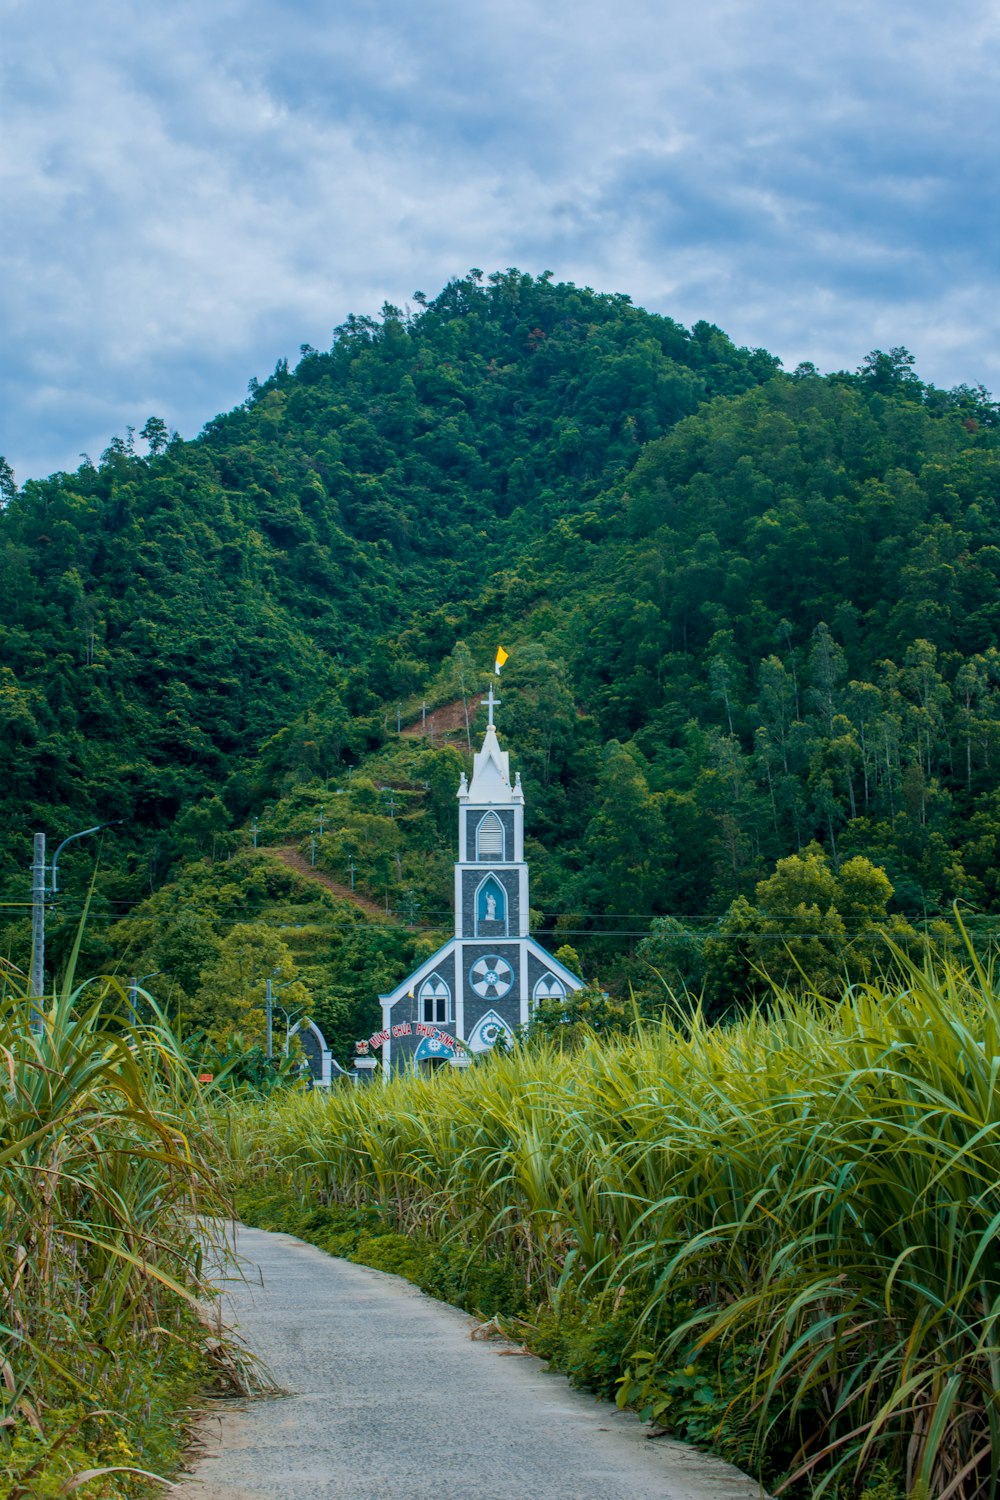 Une église au milieu d’une forêt verdoyante